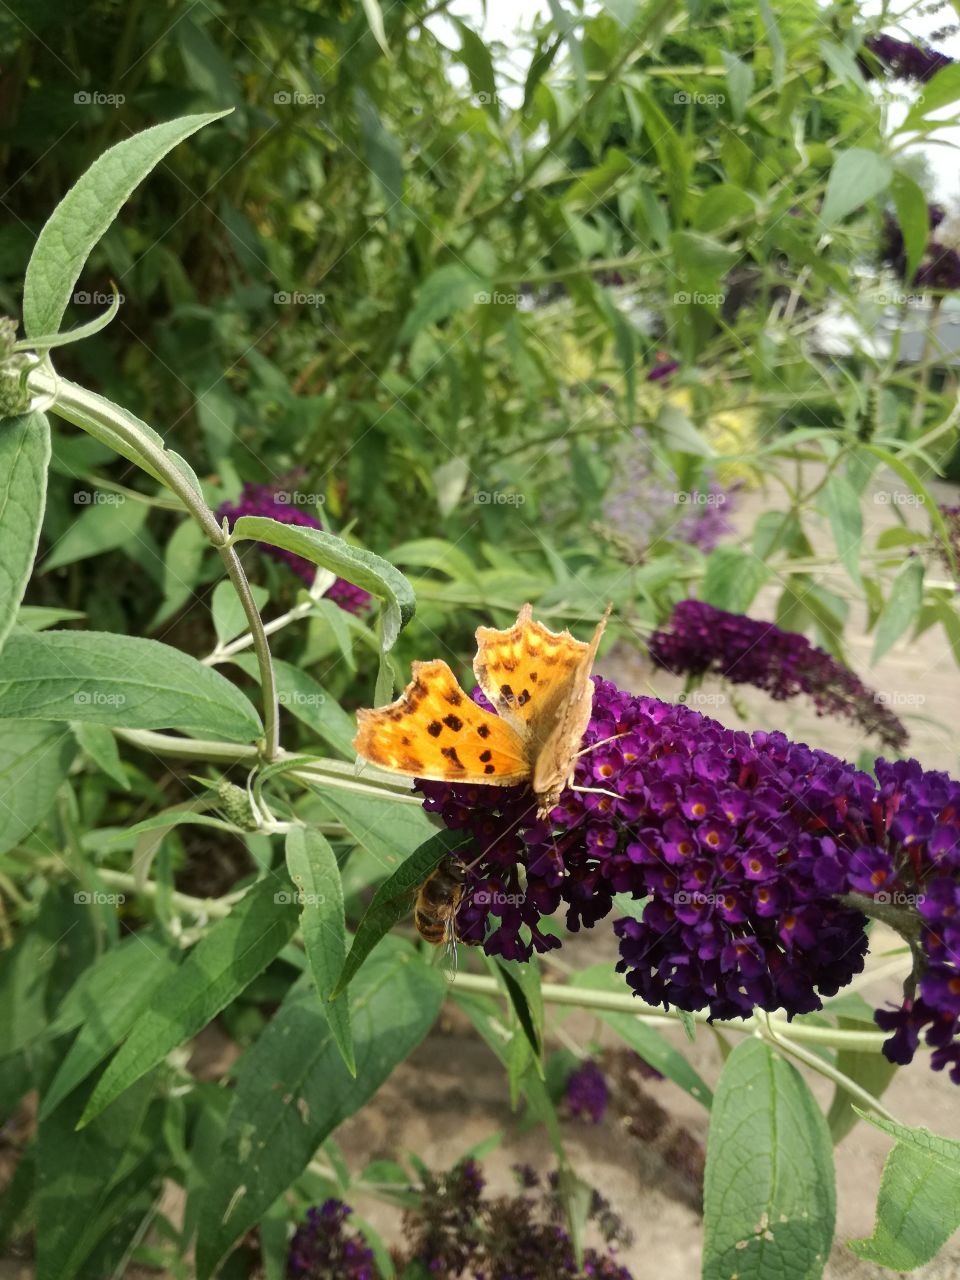 butterfly orange